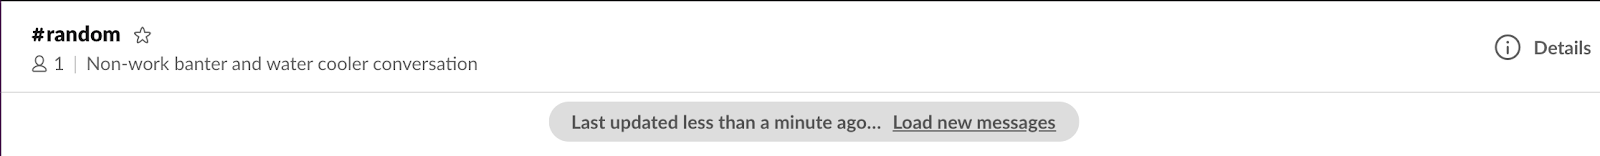 「前回の更新 : 1 分未満前... 新規メッセージを読み込む」というメッセージが表示された Slack チャンネル